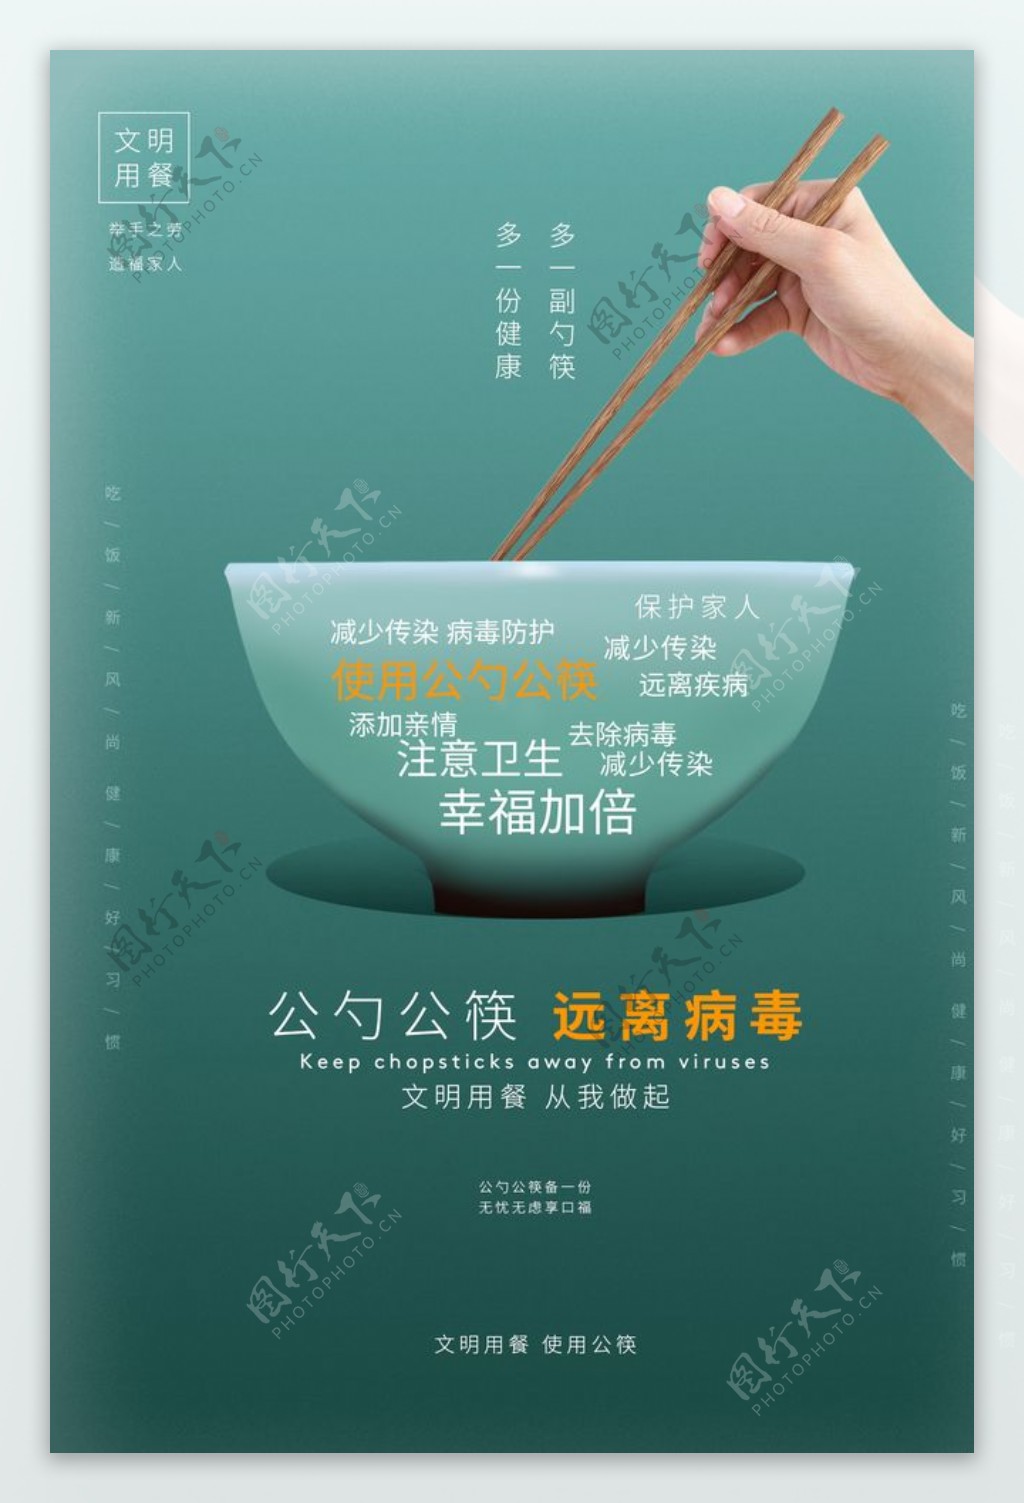 公勺公筷社会公益宣传活动海报